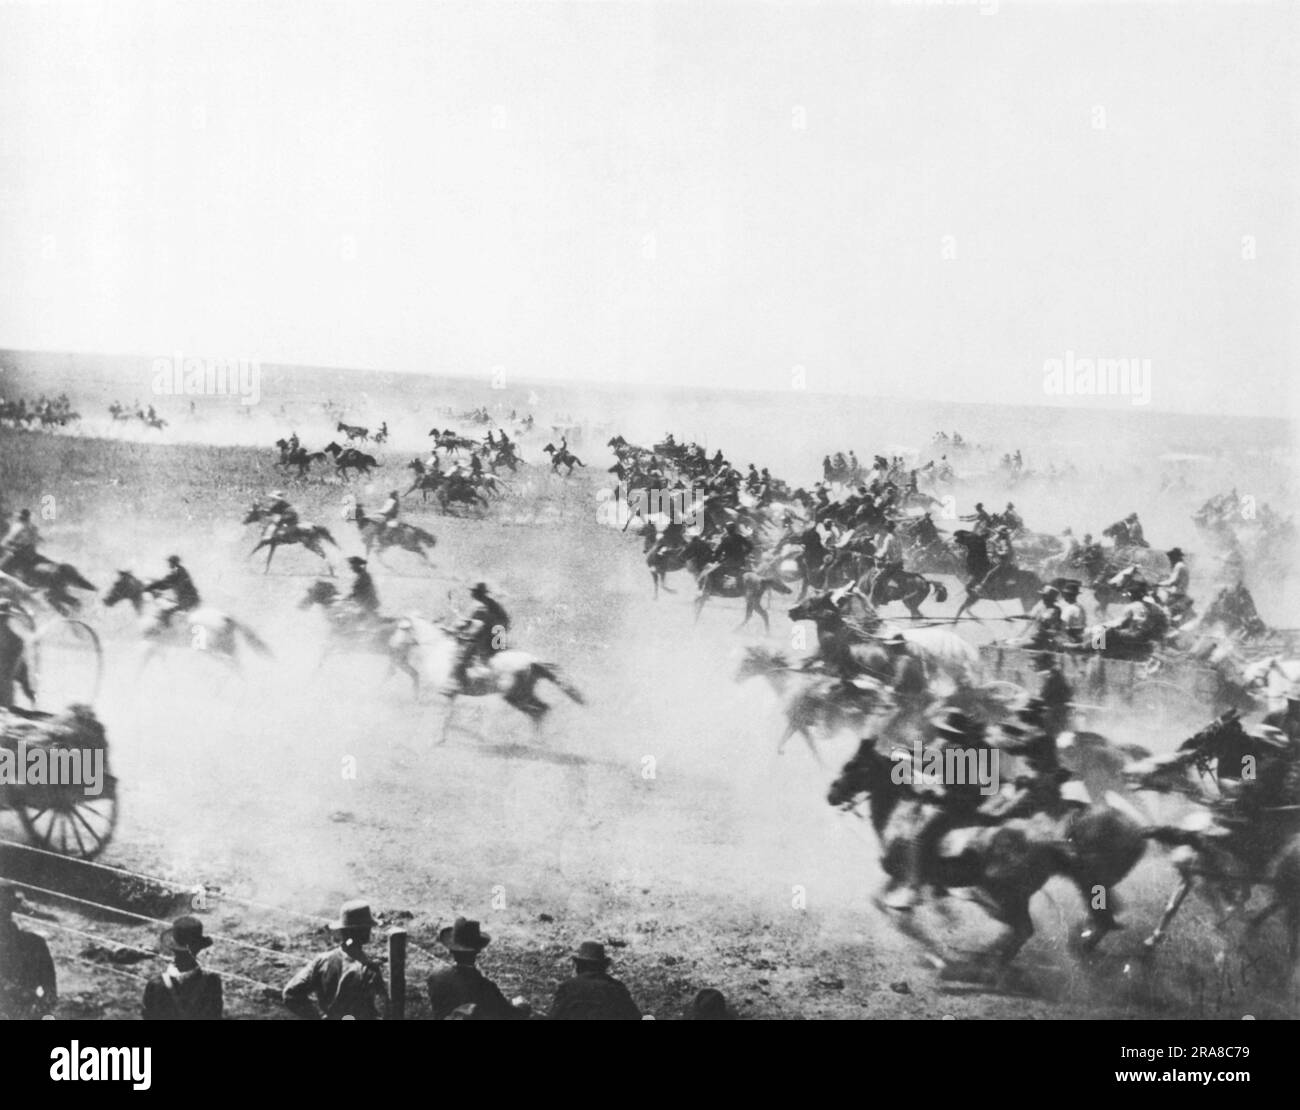 Oklahoma: 22 aprile 1889 inizio dell'Oklahoma Land Run a mezzogiorno mentre i coloni si affrettano a rivendicare le terre non assegnate. Foto Stock